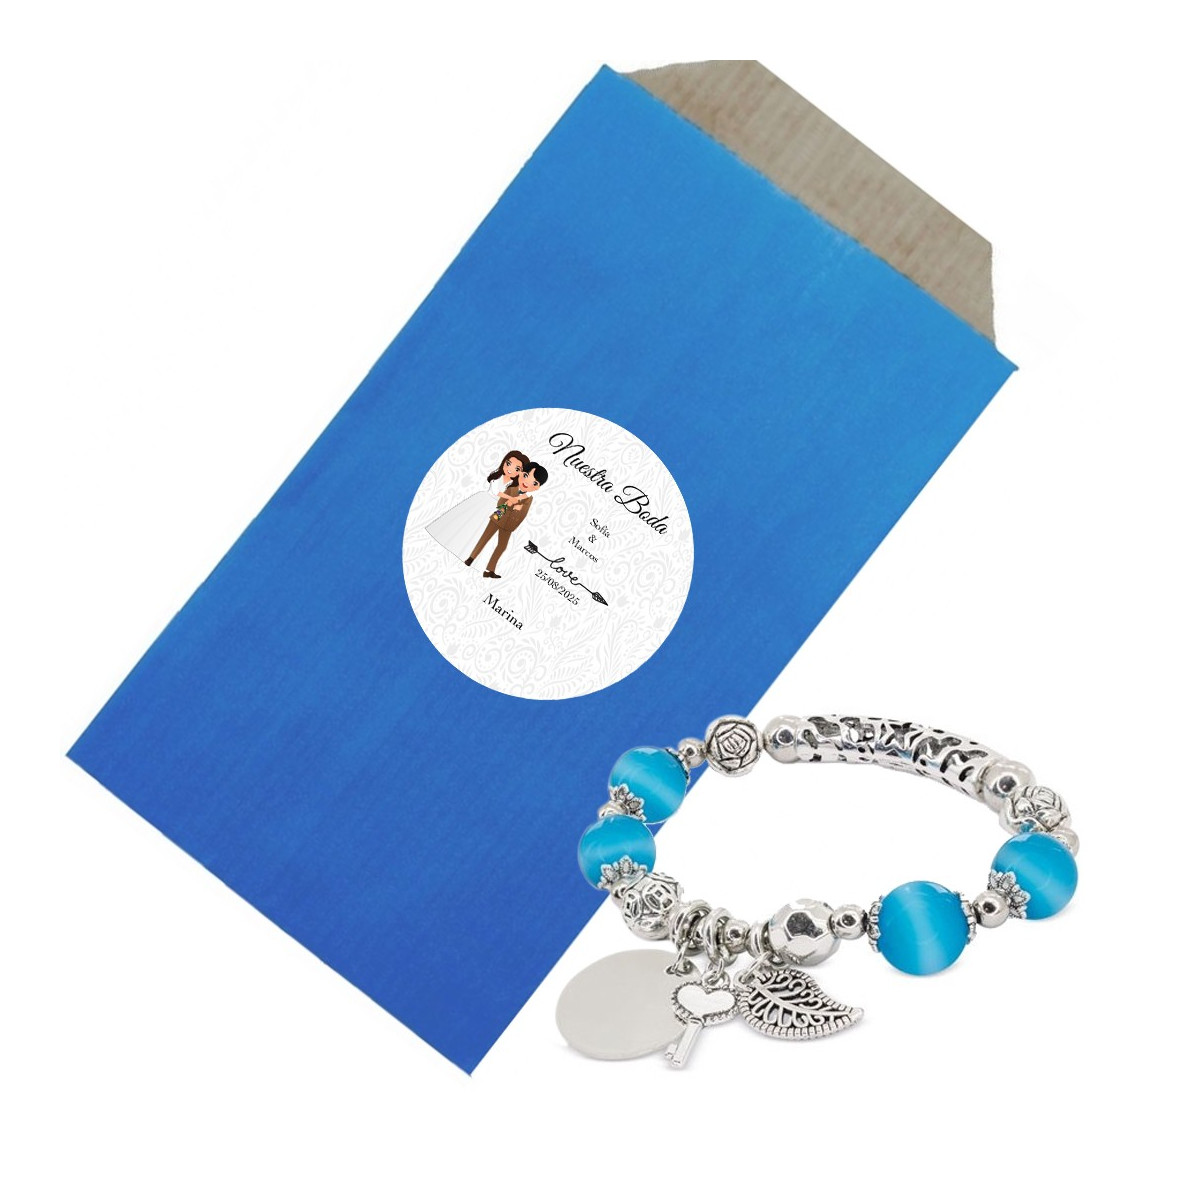 Pulseira em envelope kraft azul com adesivo personalizado com o nome dos convidados e dos noivos